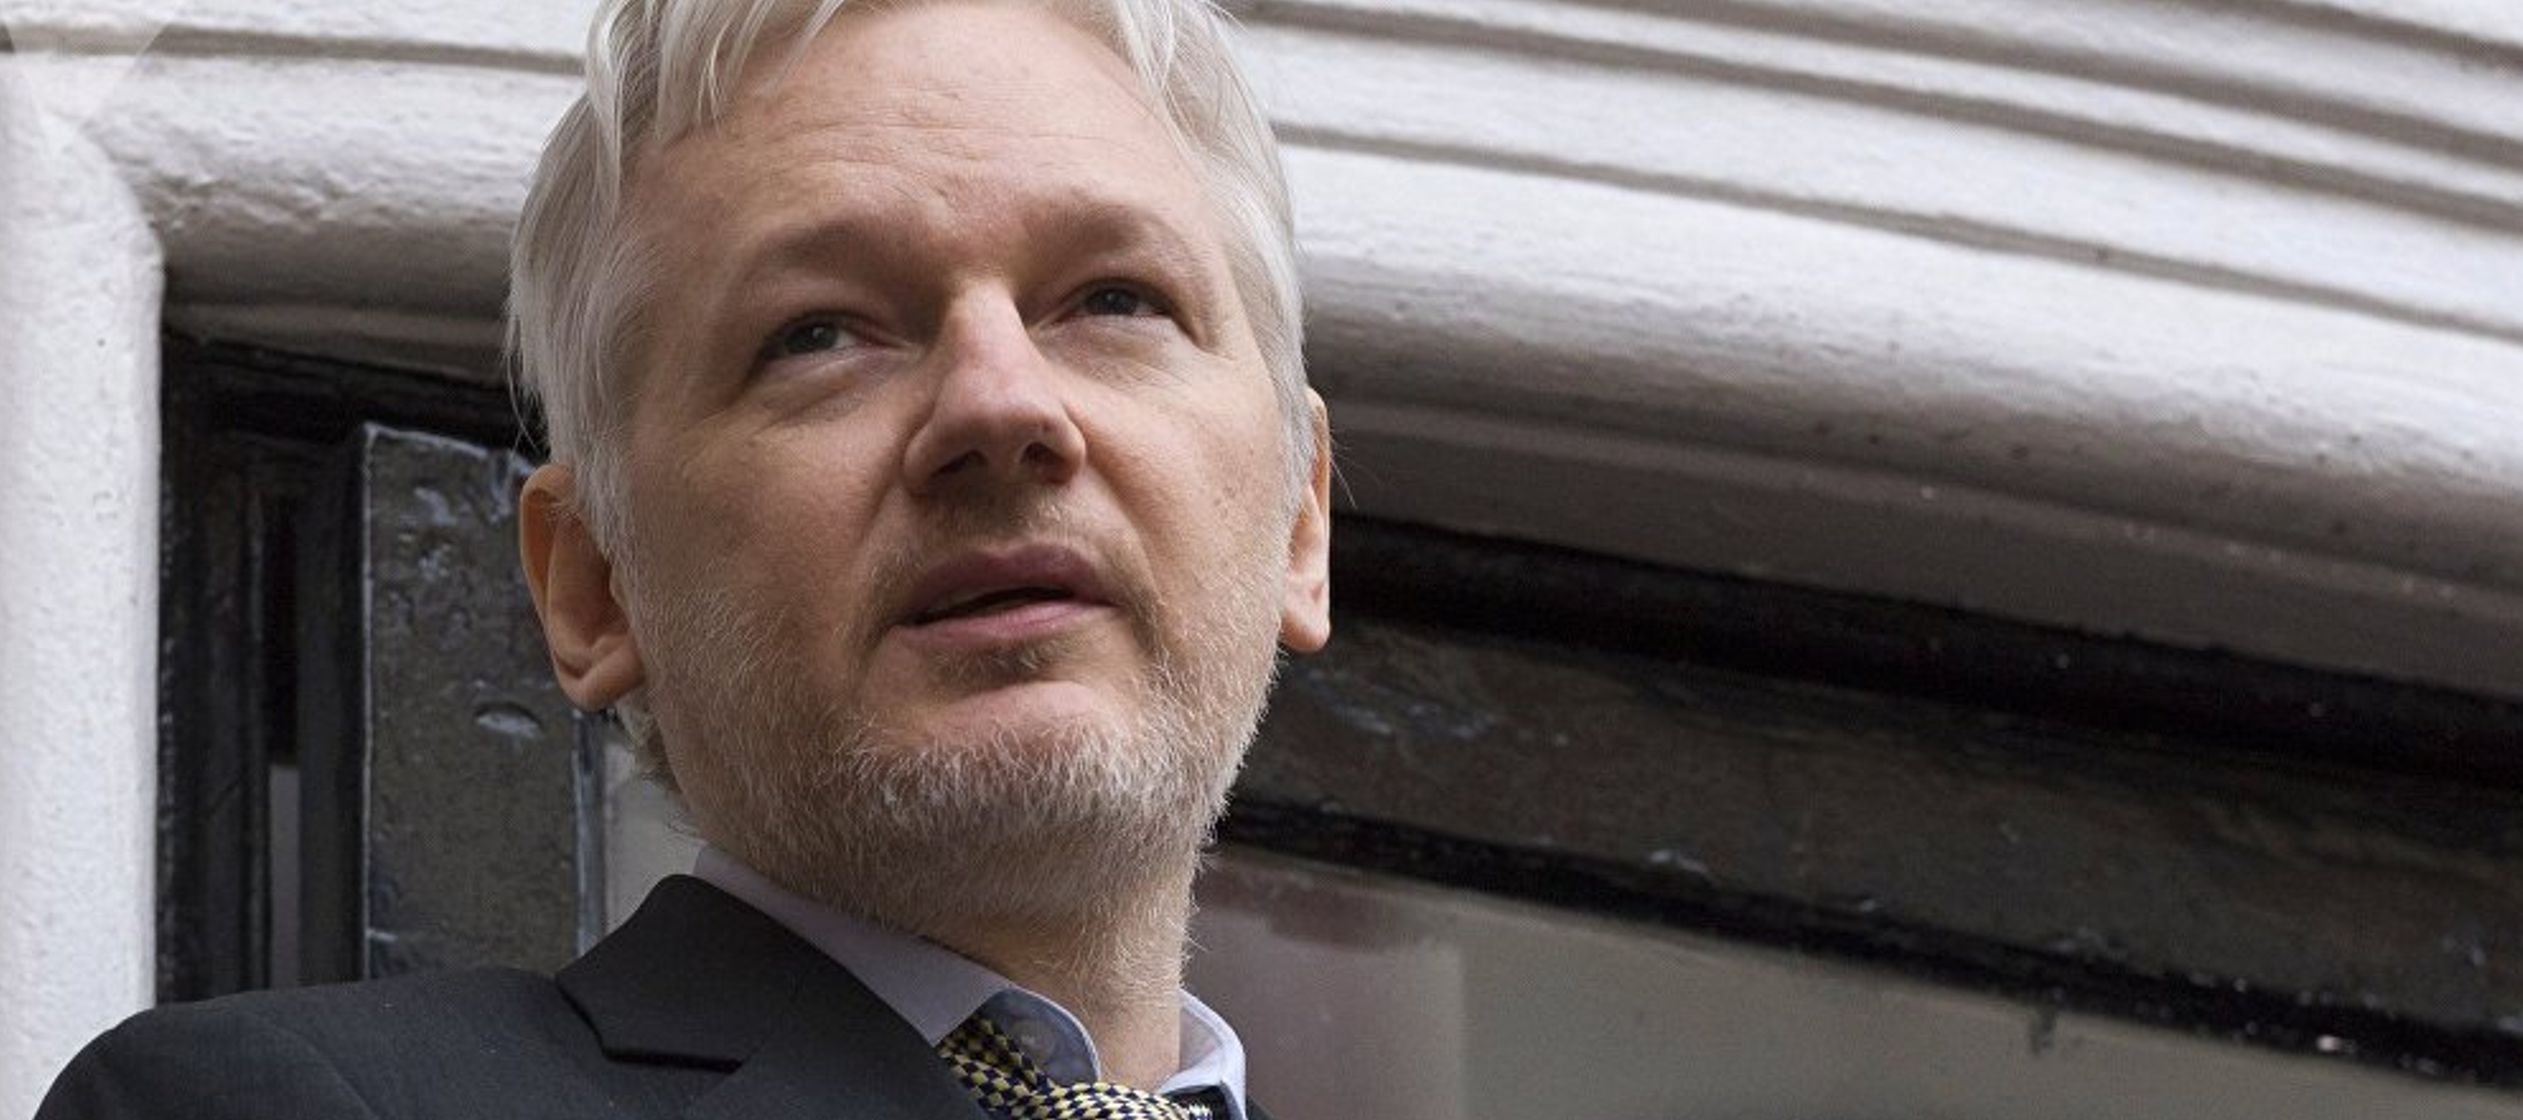 Aunque Assange sigue en su asilo, él y sus abogados temen que pueda ser extraditado a...